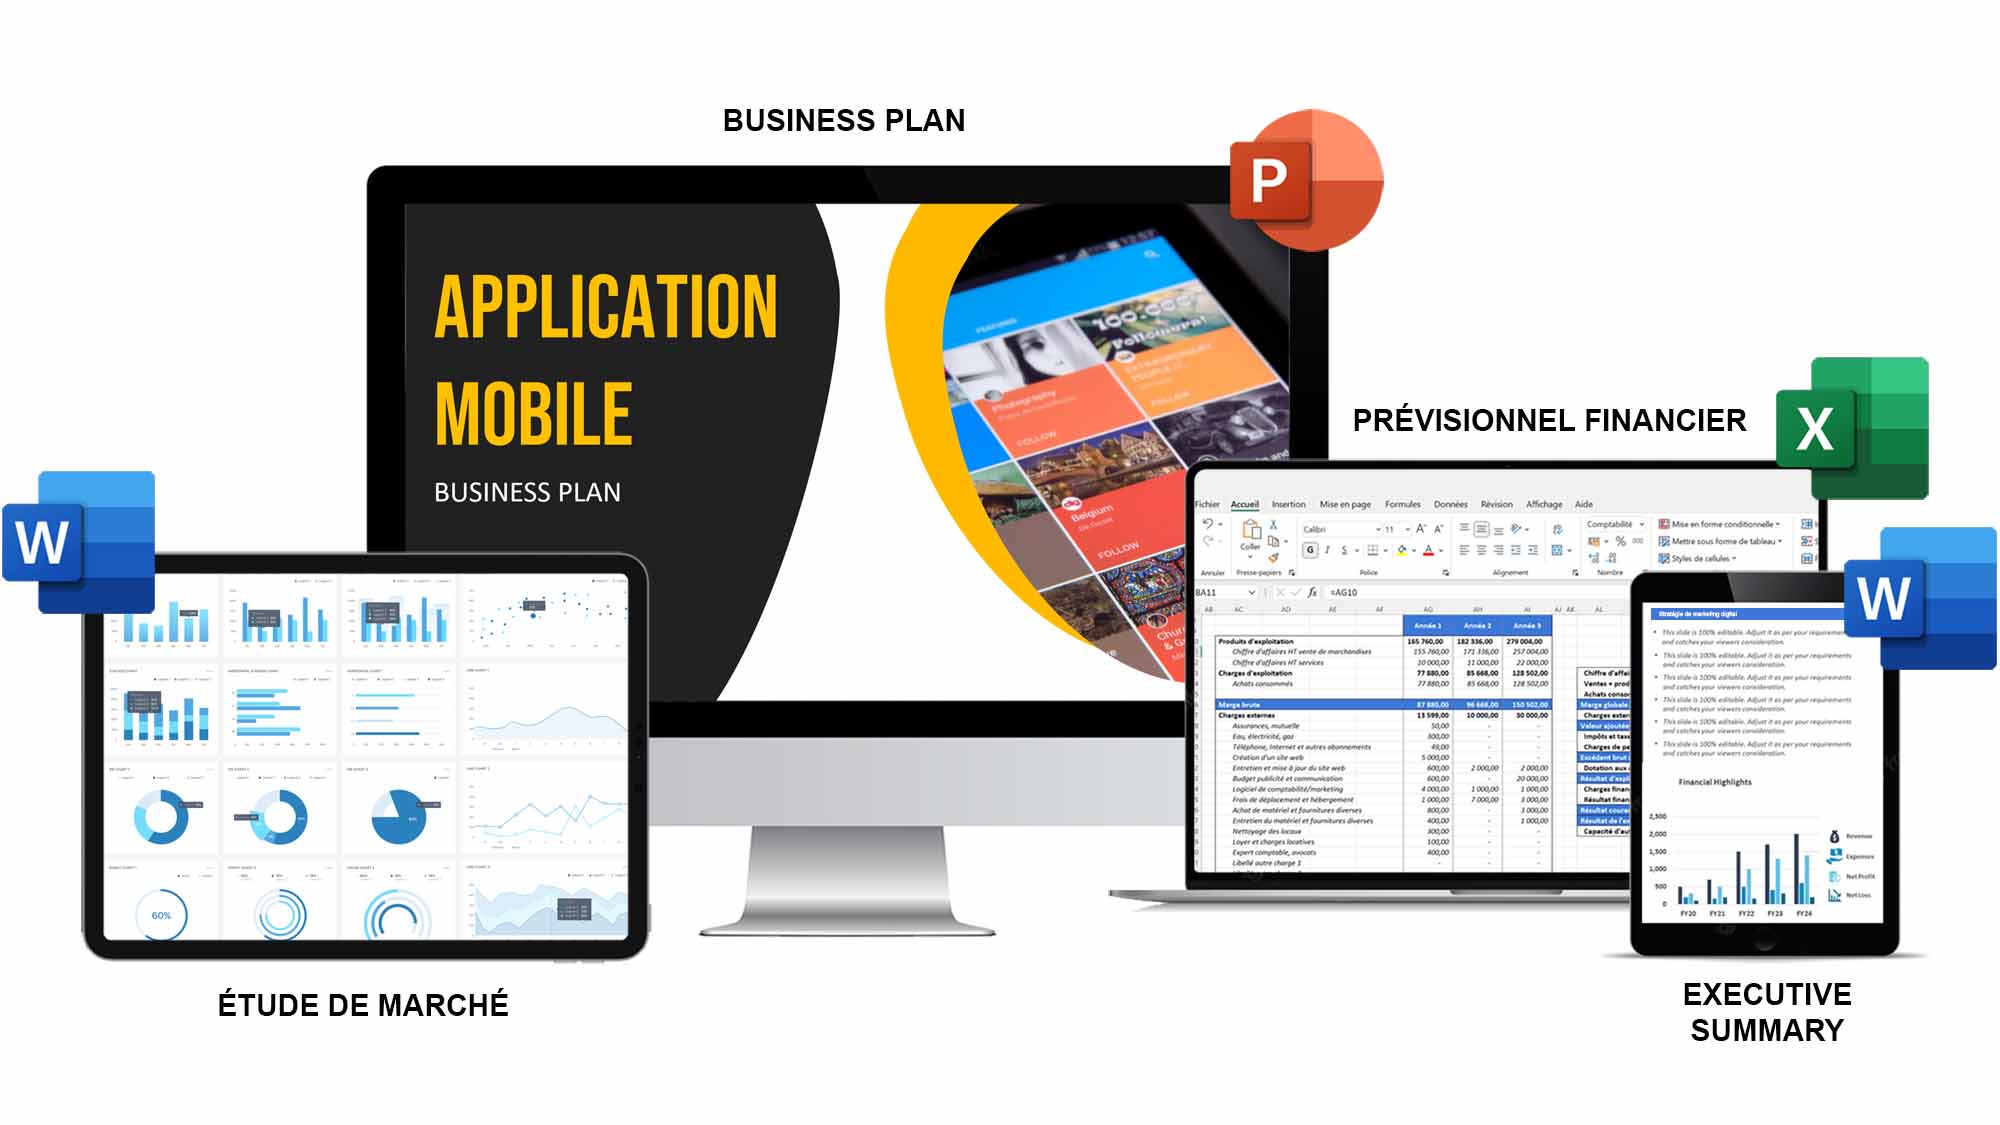 exemple business plan application mobile pdf gratuit